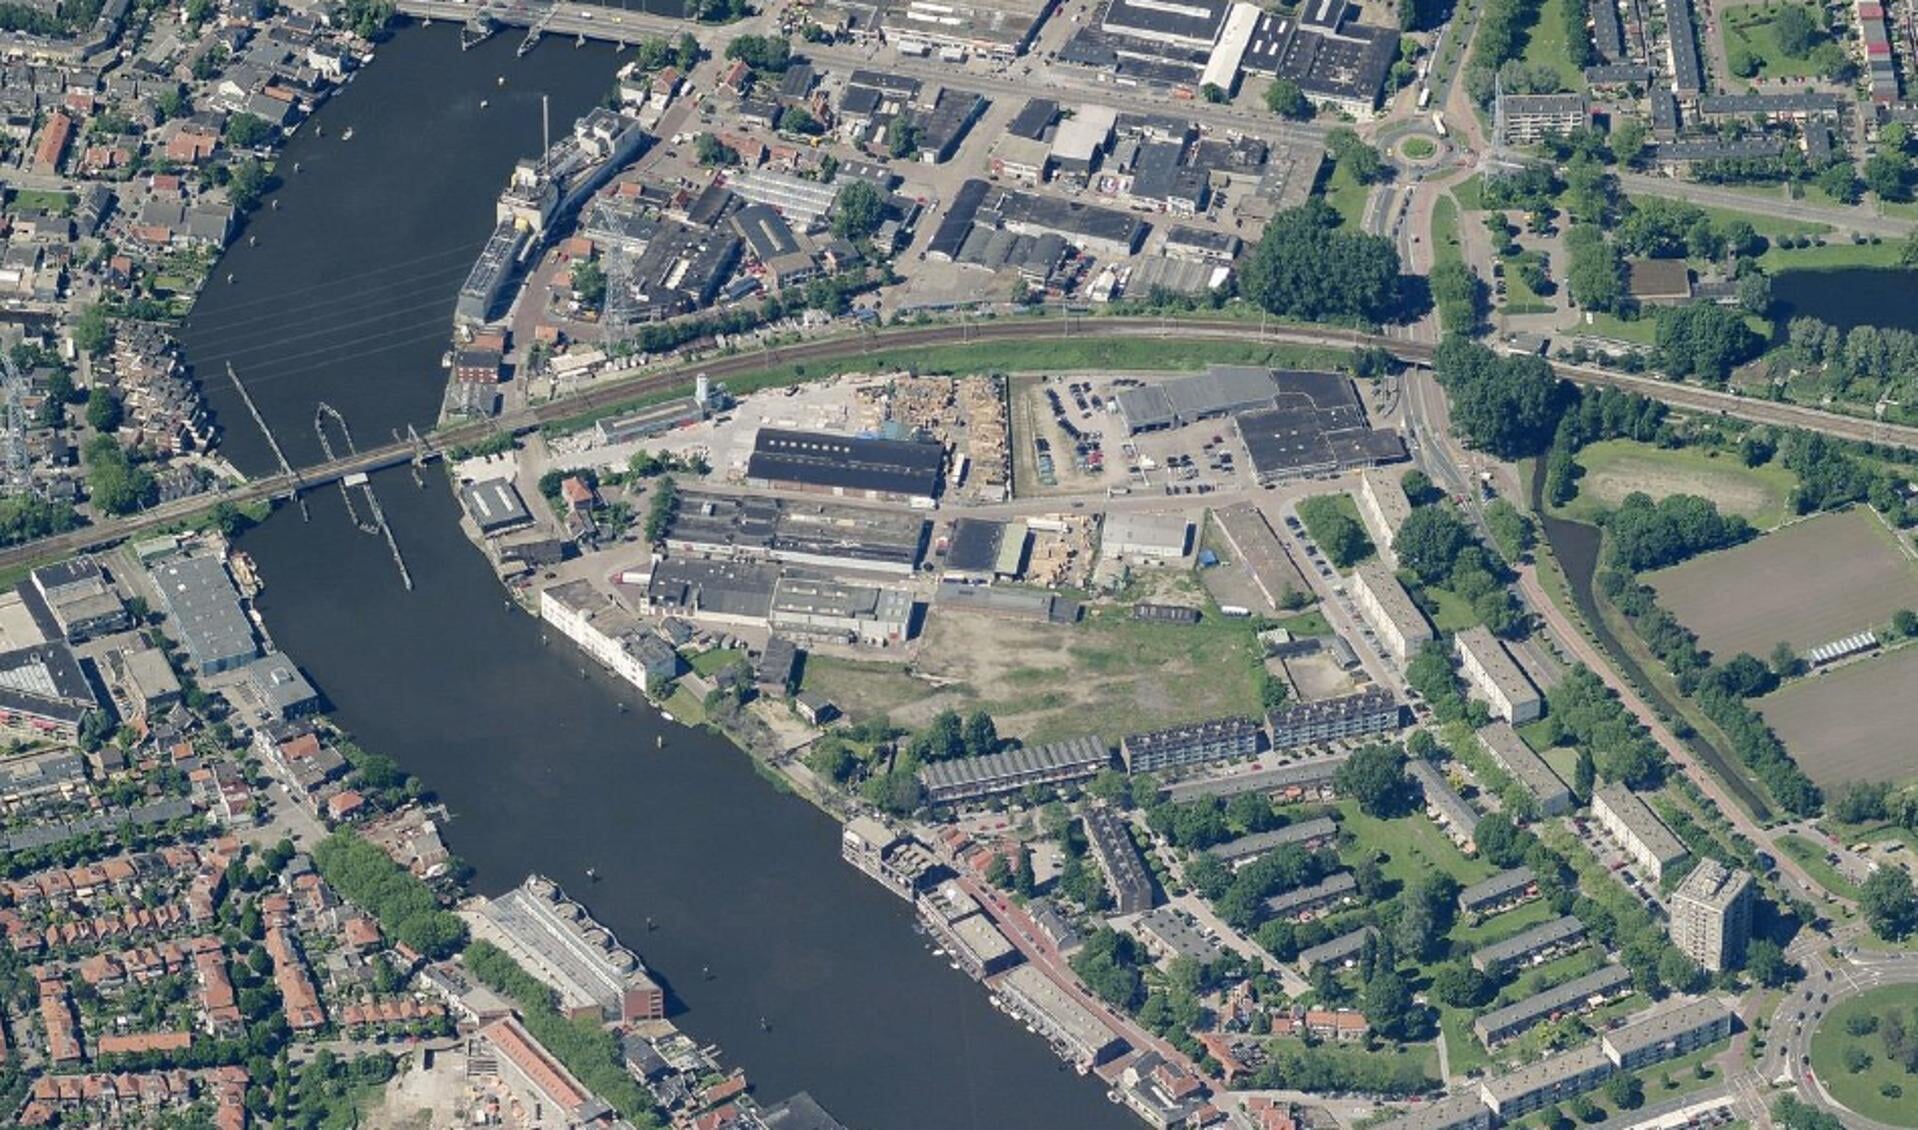 Luchtfoto van de Hofwijk in Zaanstad-Noord. Zaanstad heeft de ambitie om de komende jaren 15.000 tot 20.000 nieuwe woningen te realiseren in bestaande wijken.